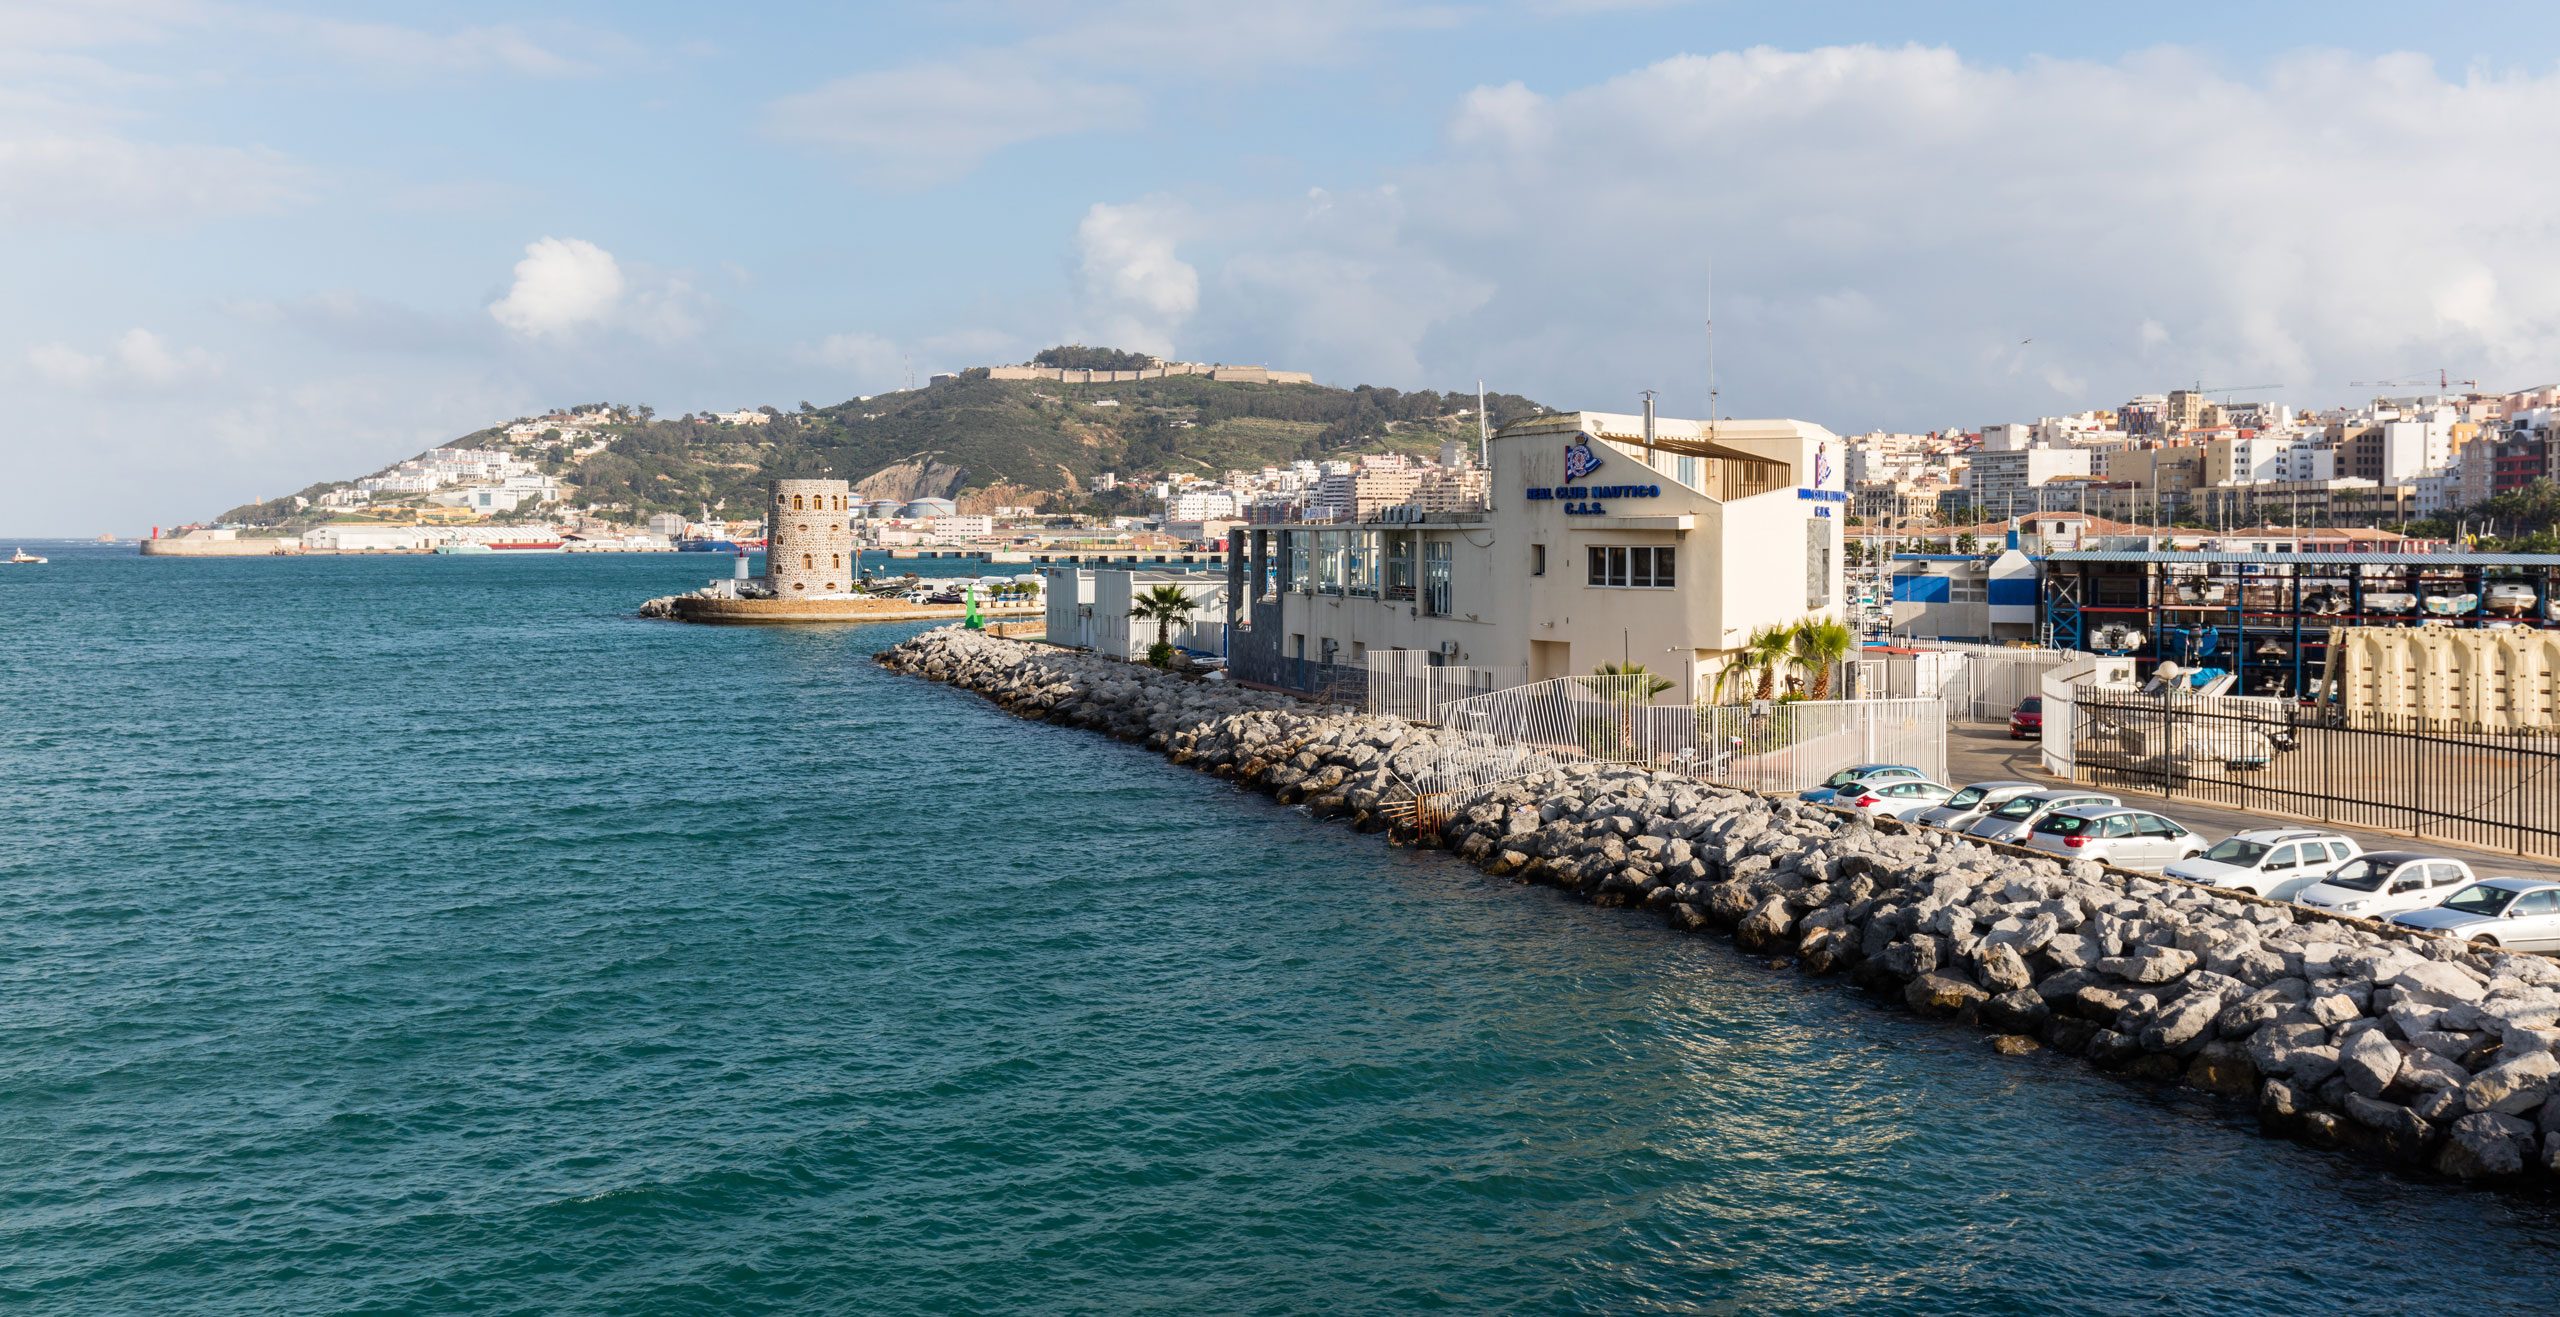 Los visitantes de Ceuta pueden explorar una gran variedad de lugares históricos, como la antigua ciudad romana de Cotta, las Murallas Reales de Ceuta, del siglo XV, y la pintoresca Plaza de África, donde se puede disfrutar de un café o una bebida refrescante mientras se contemplan las impresionantes vistas del mar Mediterráneo.